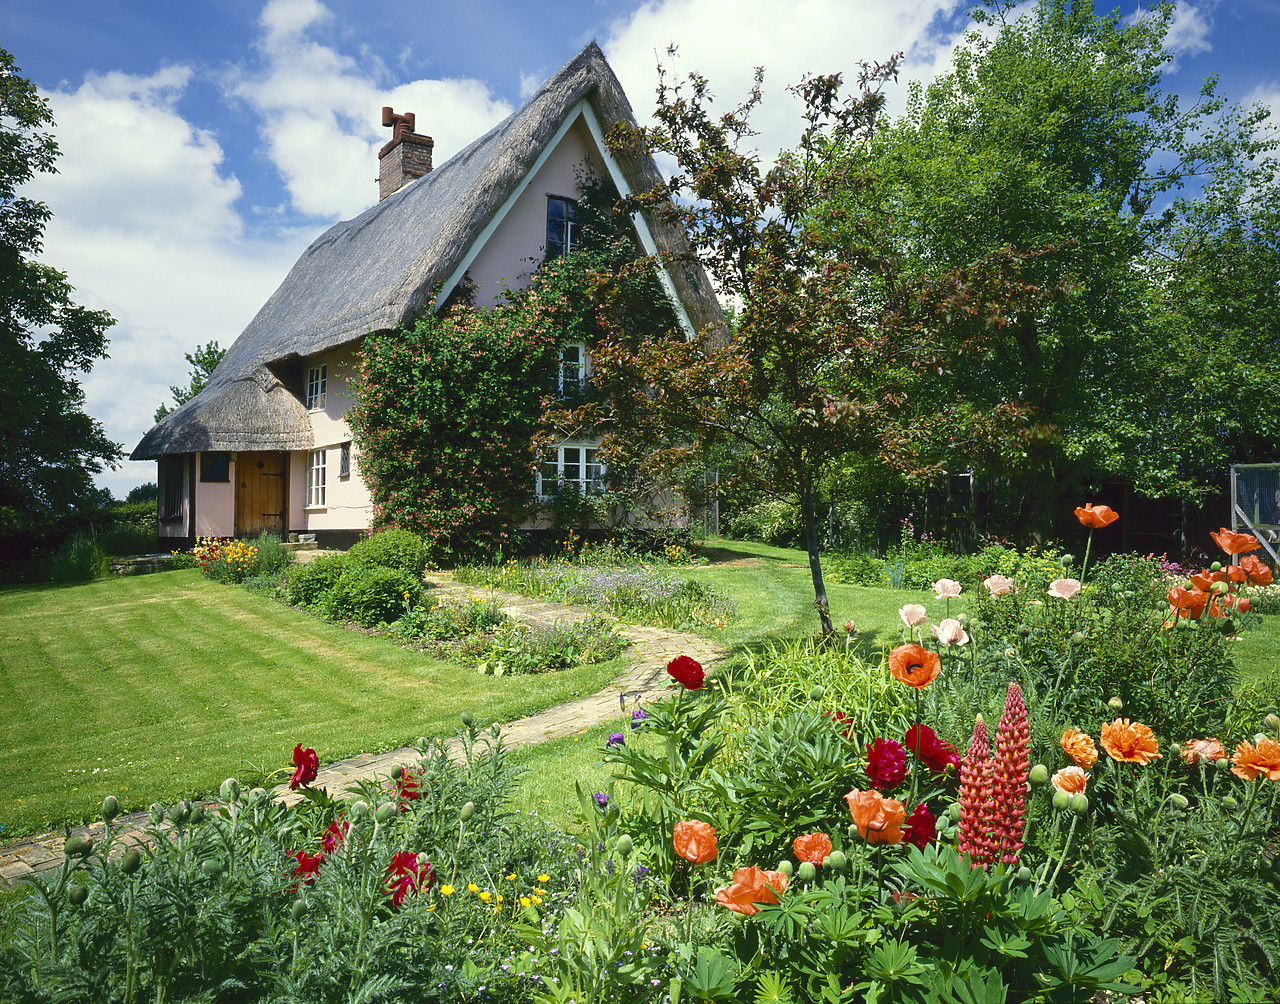 #86713-3 - Thatched Cottage & Garden, near Dennington, Suffolk, England